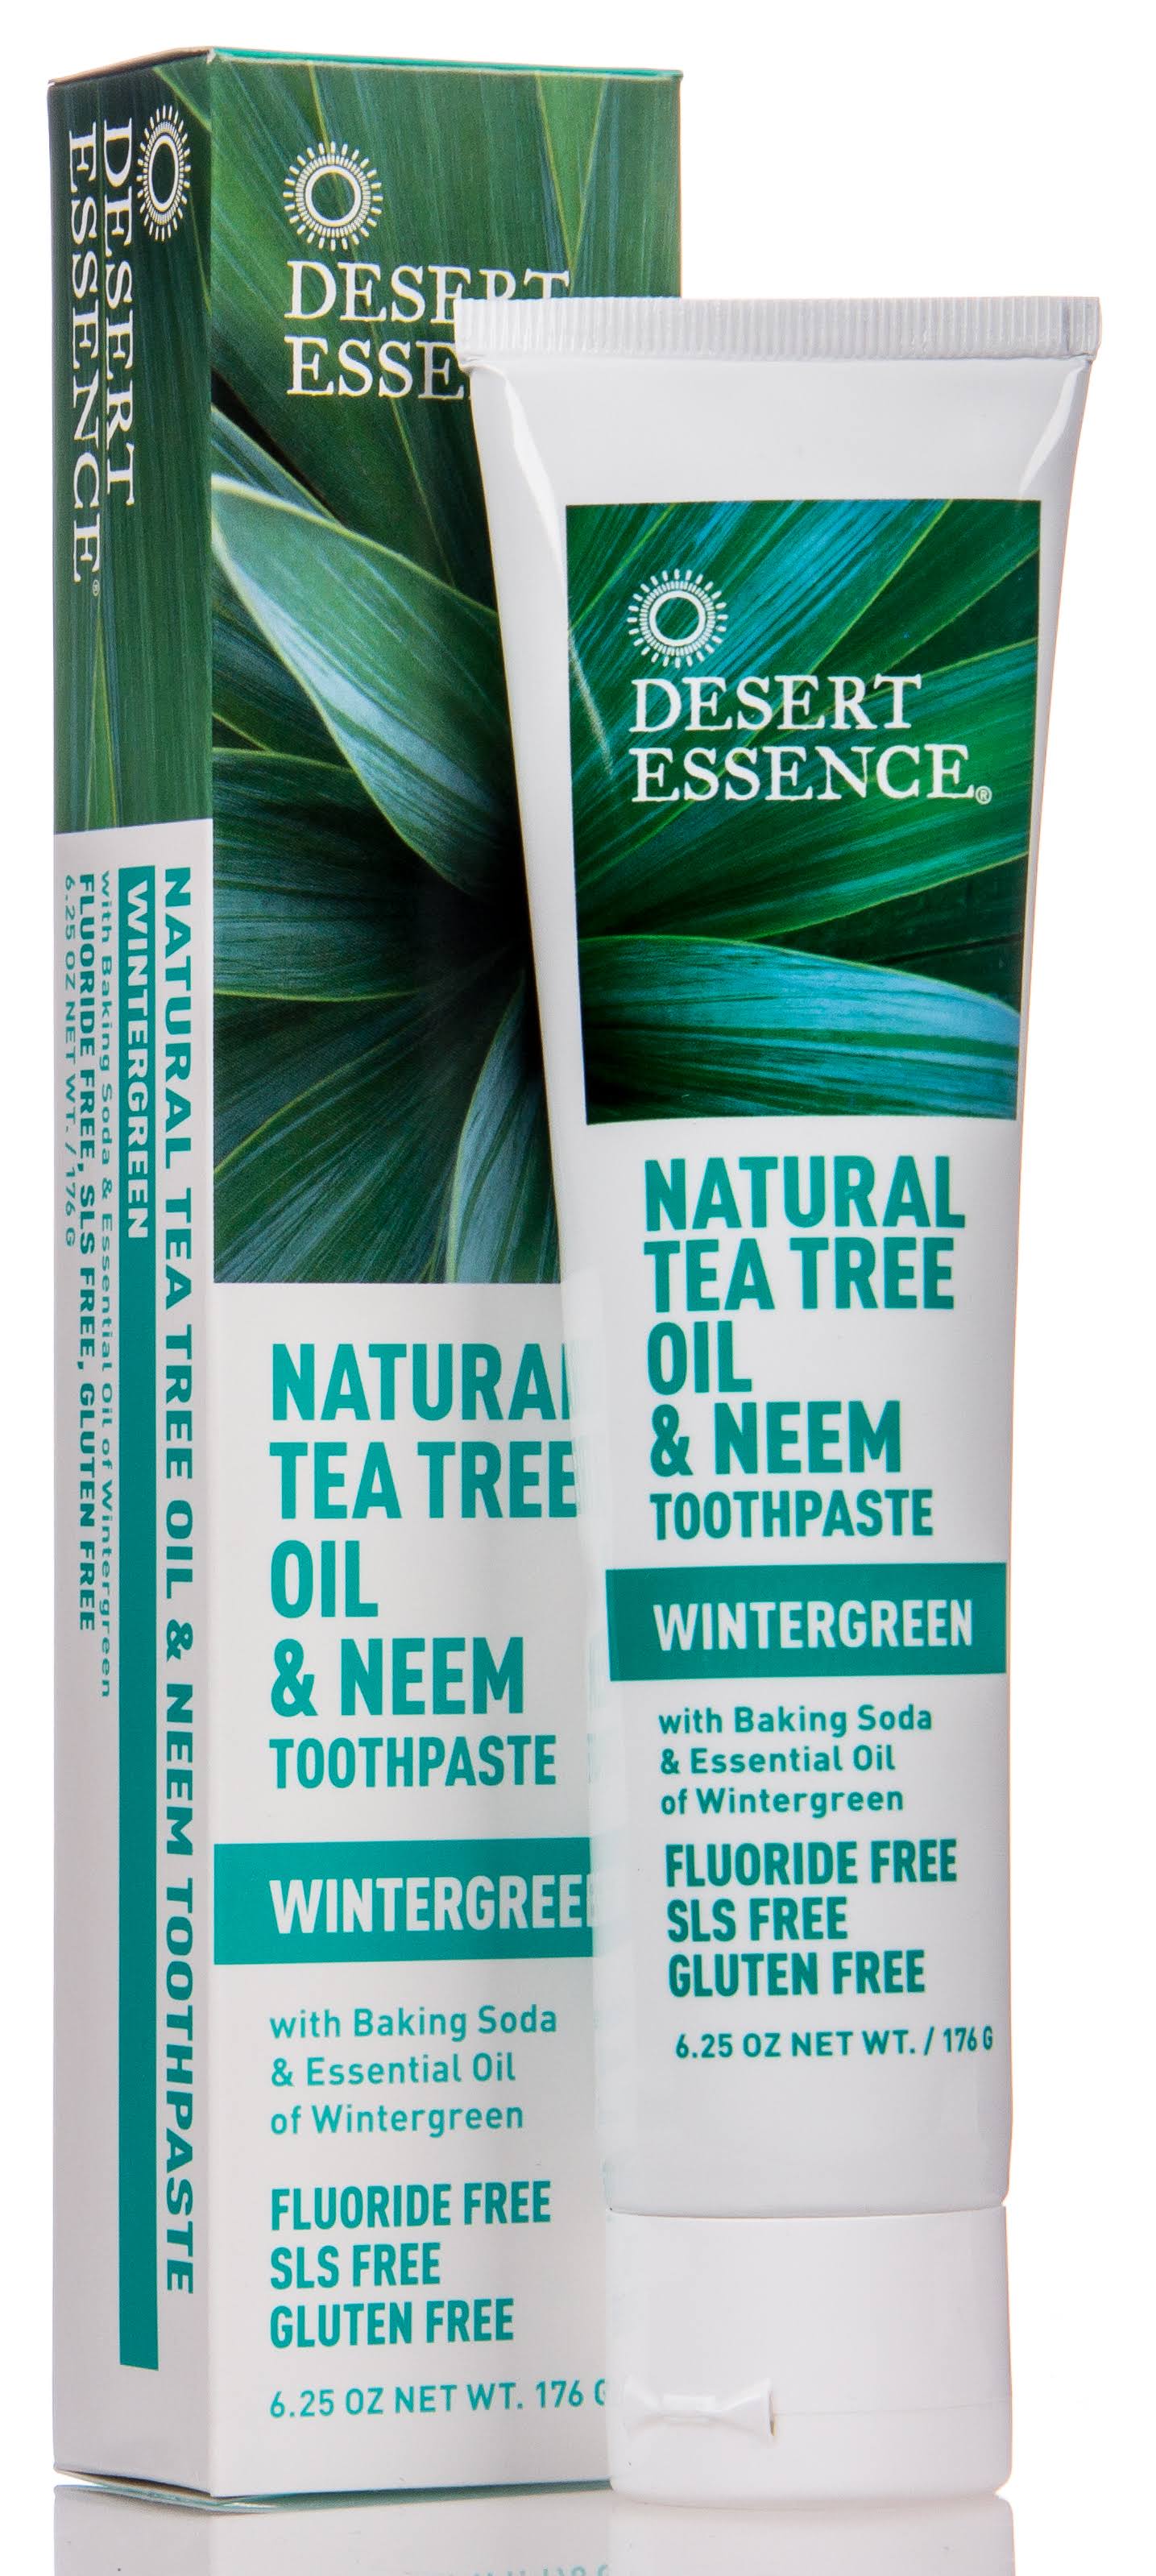 Desert Essence, Natural Tea Tree Oil & Neem Toothpaste